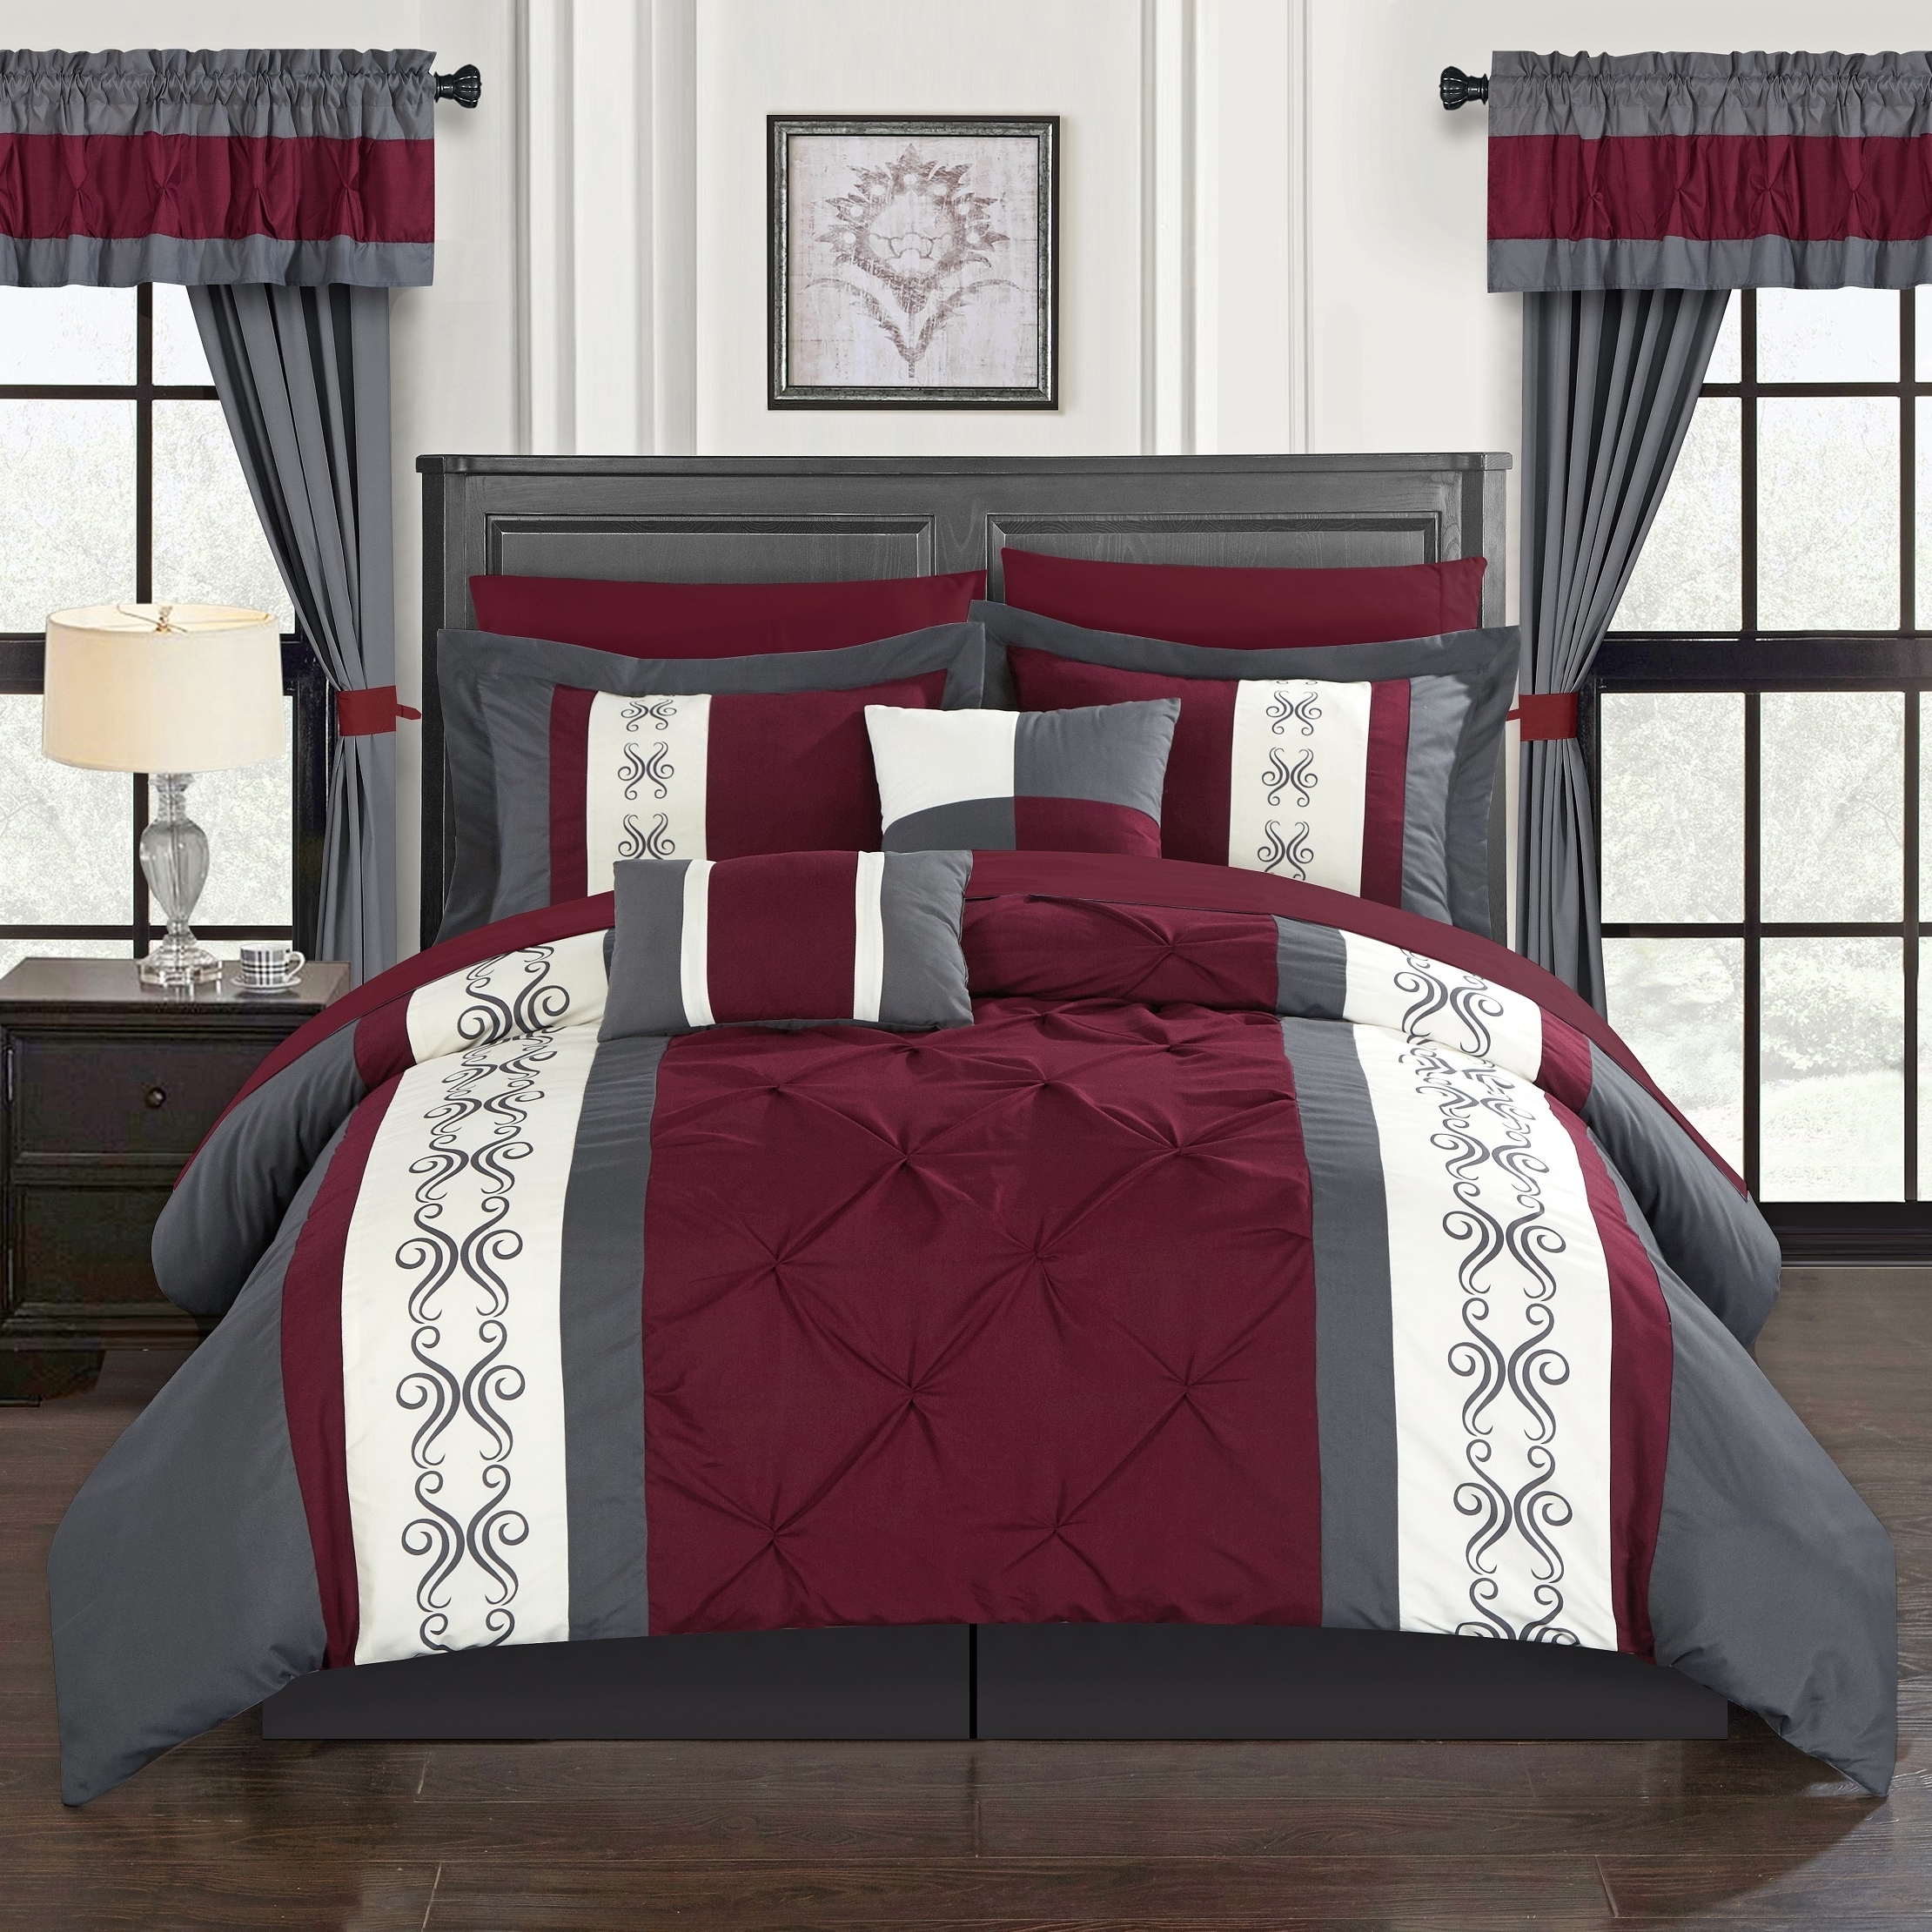 Adara 20 Piece Comforter Set Color Block Pinch Pleat Pintuck Design - Red, Queen